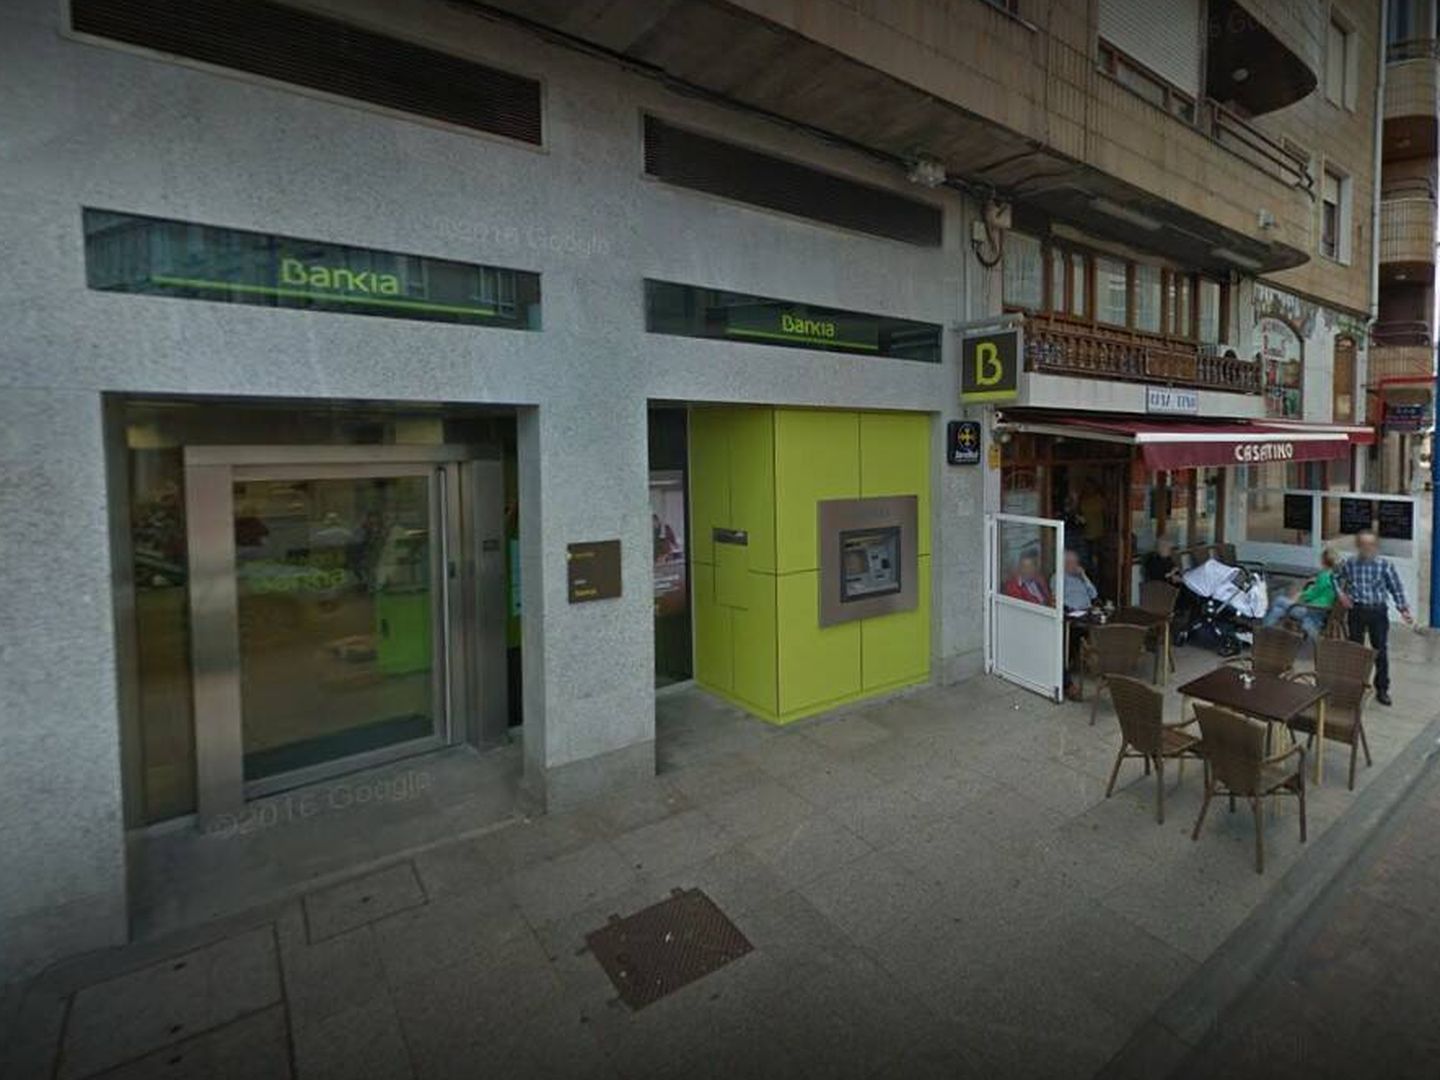 Oficina de Bankia en Santoña. (Google Maps)